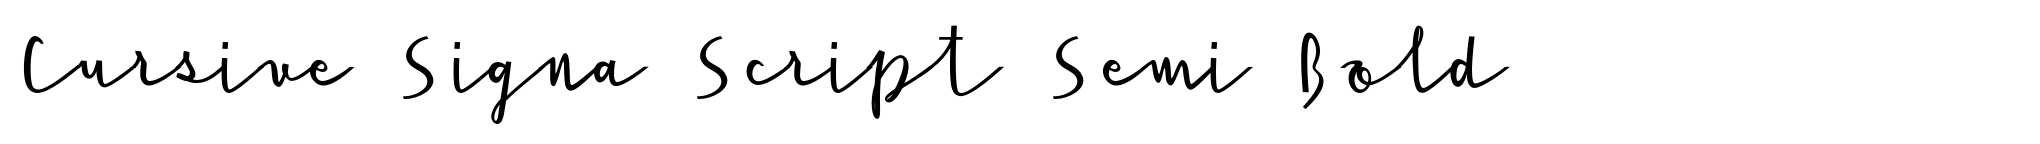 Cursive Signa Script Semi Bold image